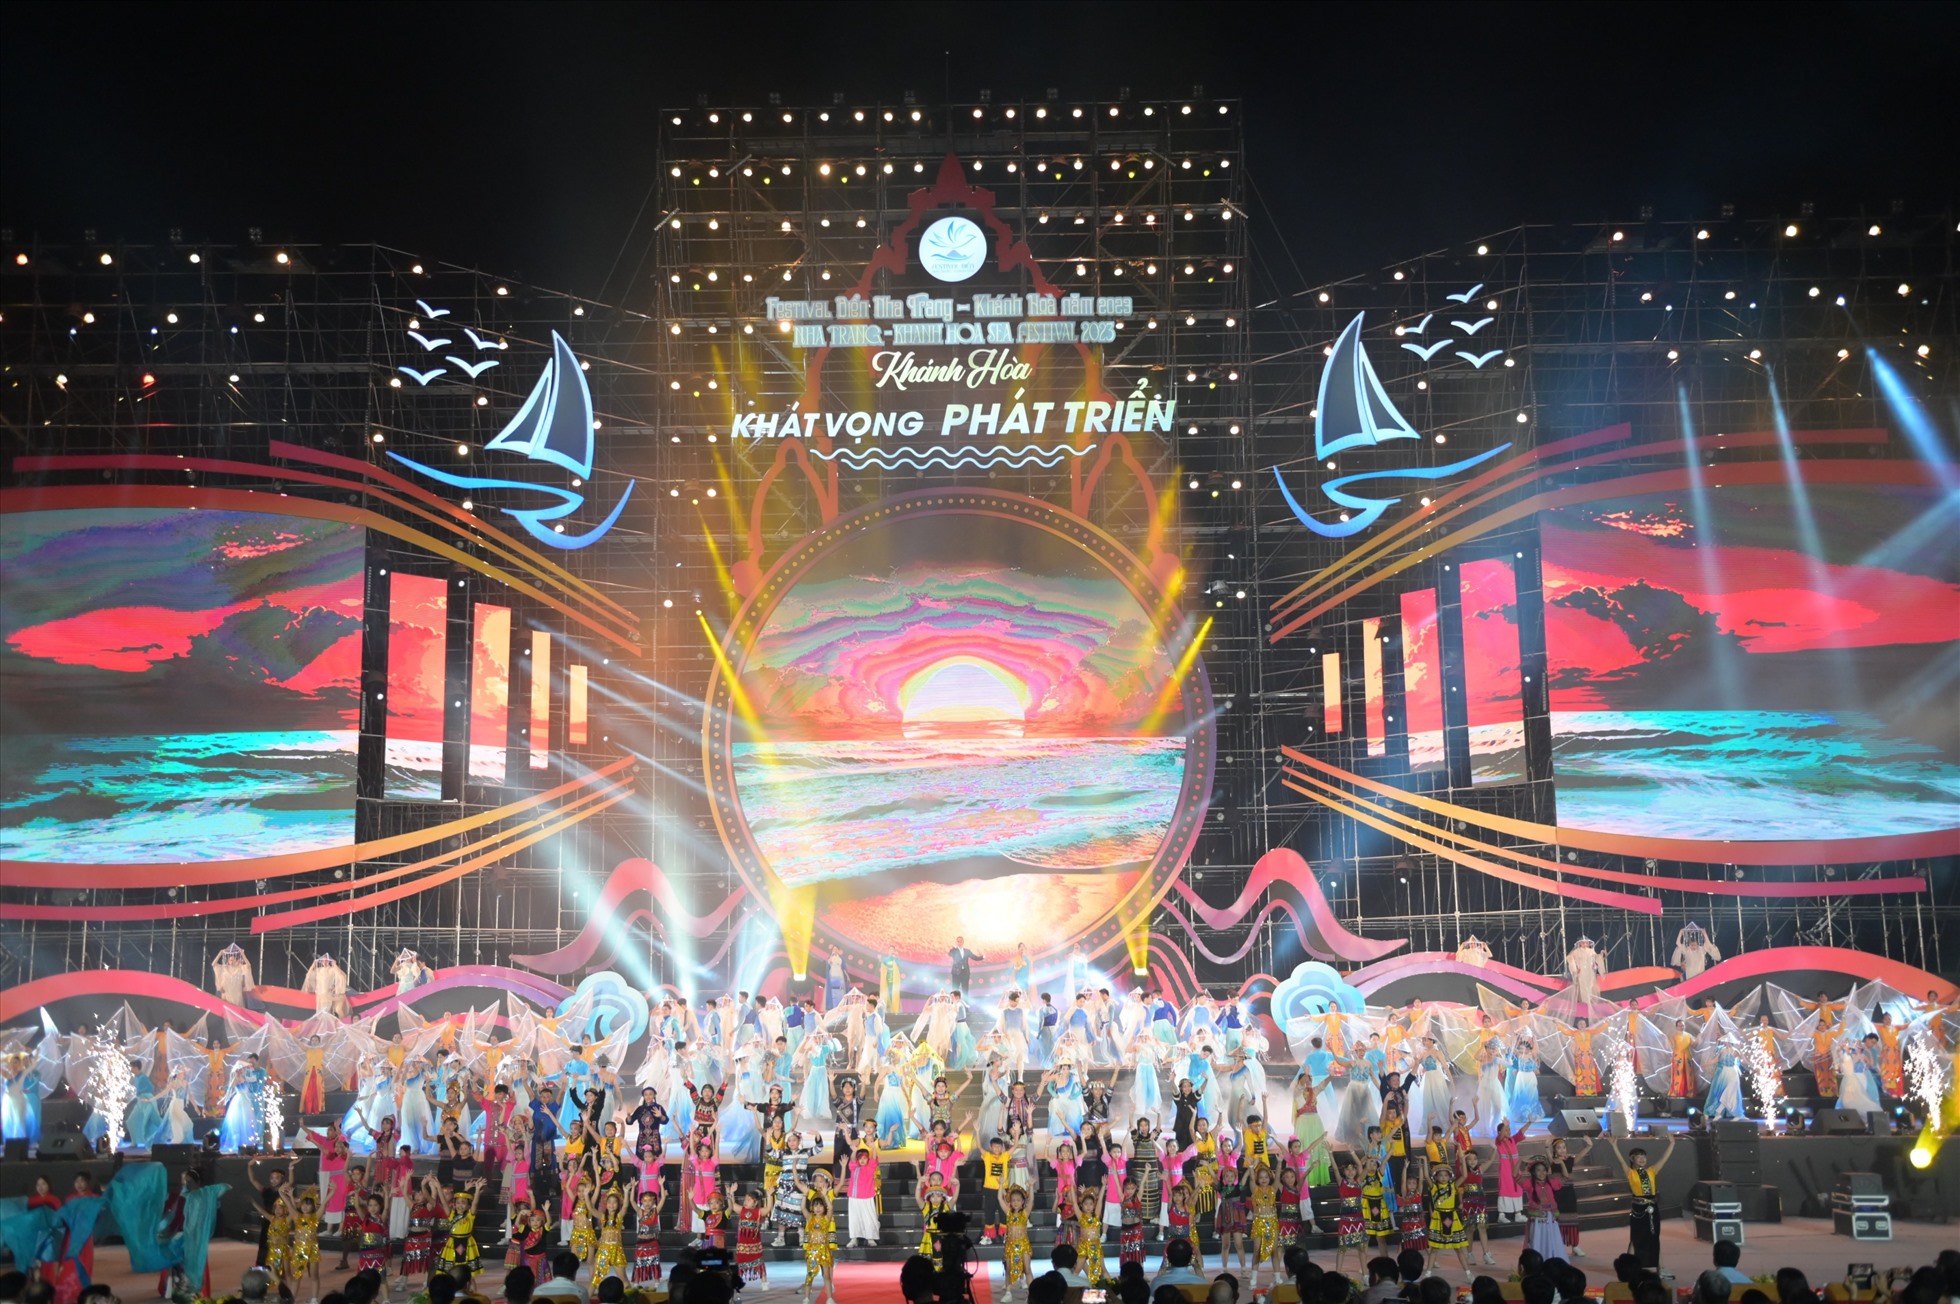 Cùng với màn trình diễn nghệ thuật ánh sáng drone light, 700 nghệ sĩ, diễn viên đã mang đến đêm hội đầy sắc màu. Ảnh: Phương Linh